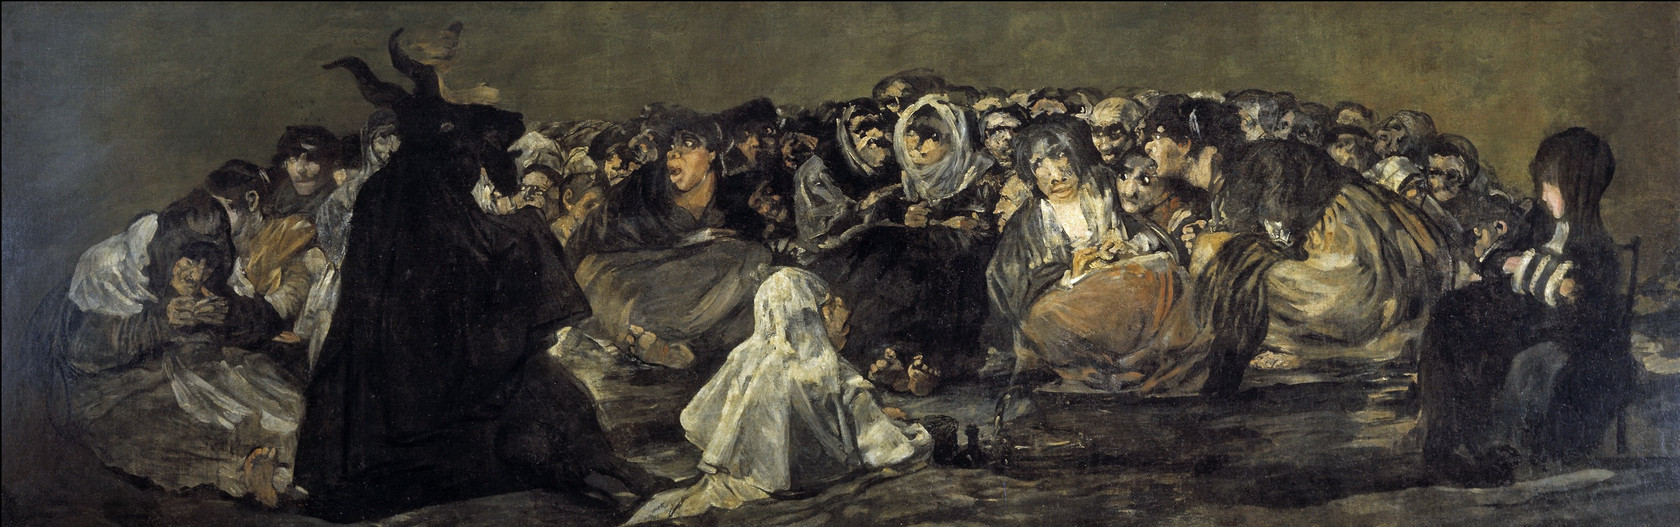 Картина - Шабаш ведьм, 1820 - 1823